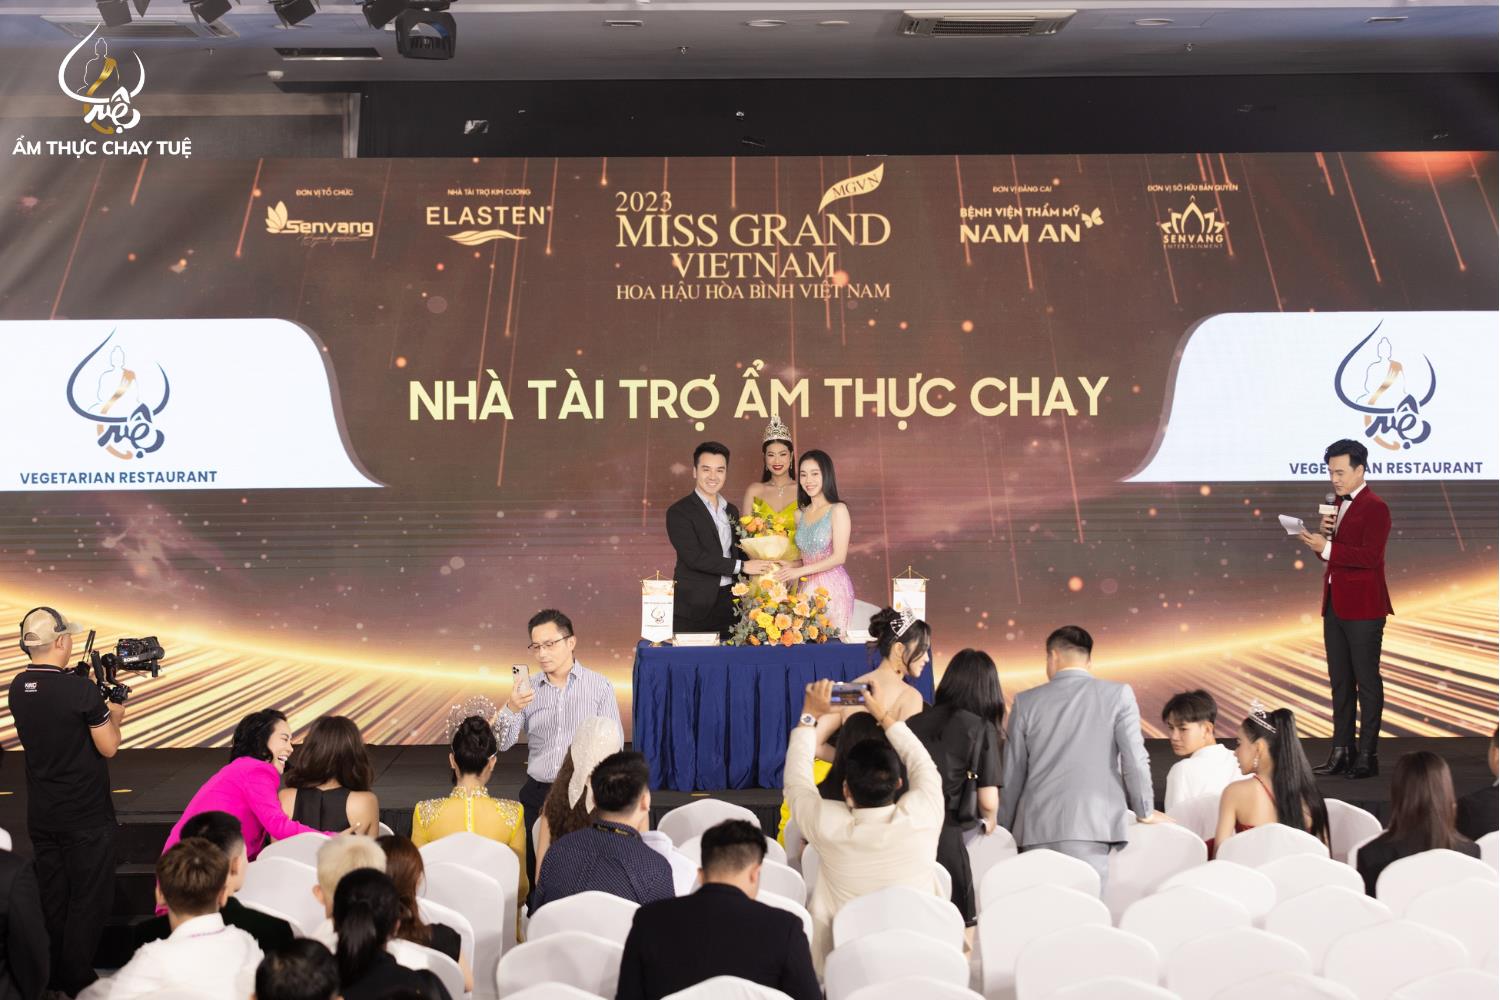 Ẩm thực chay Tuệ đồng hành cùng Miss Grand Vietnam 2023 - Ảnh 1.